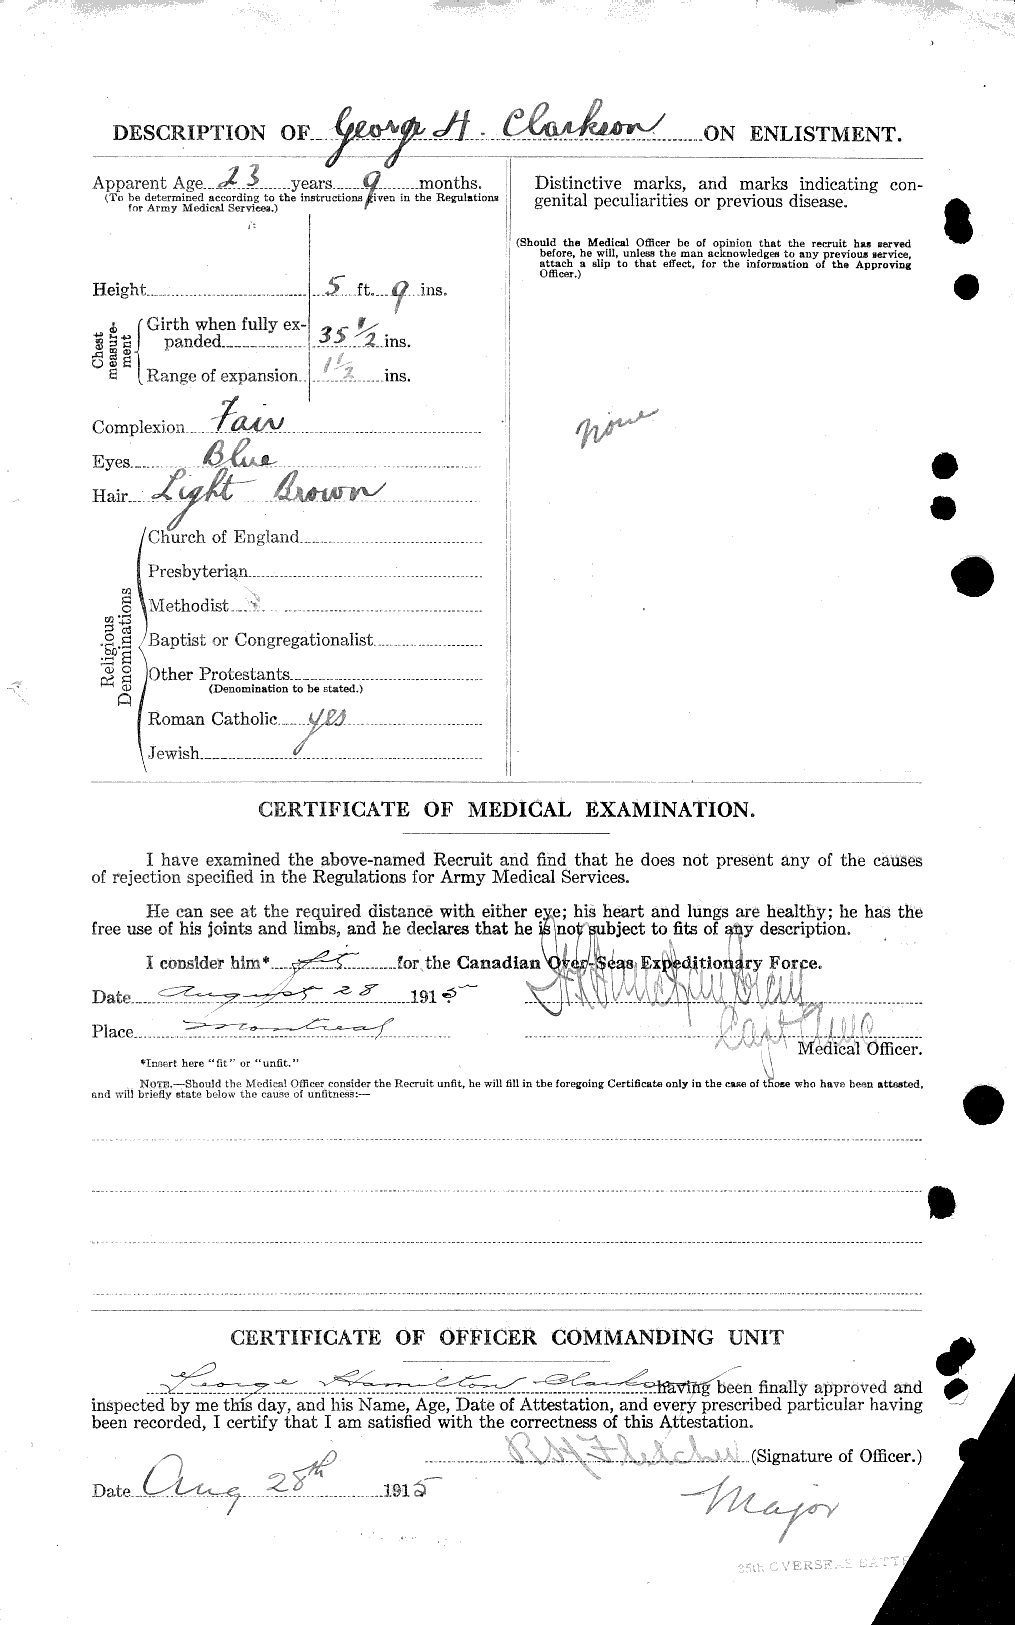 Dossiers du Personnel de la Première Guerre mondiale - CEC 021431b